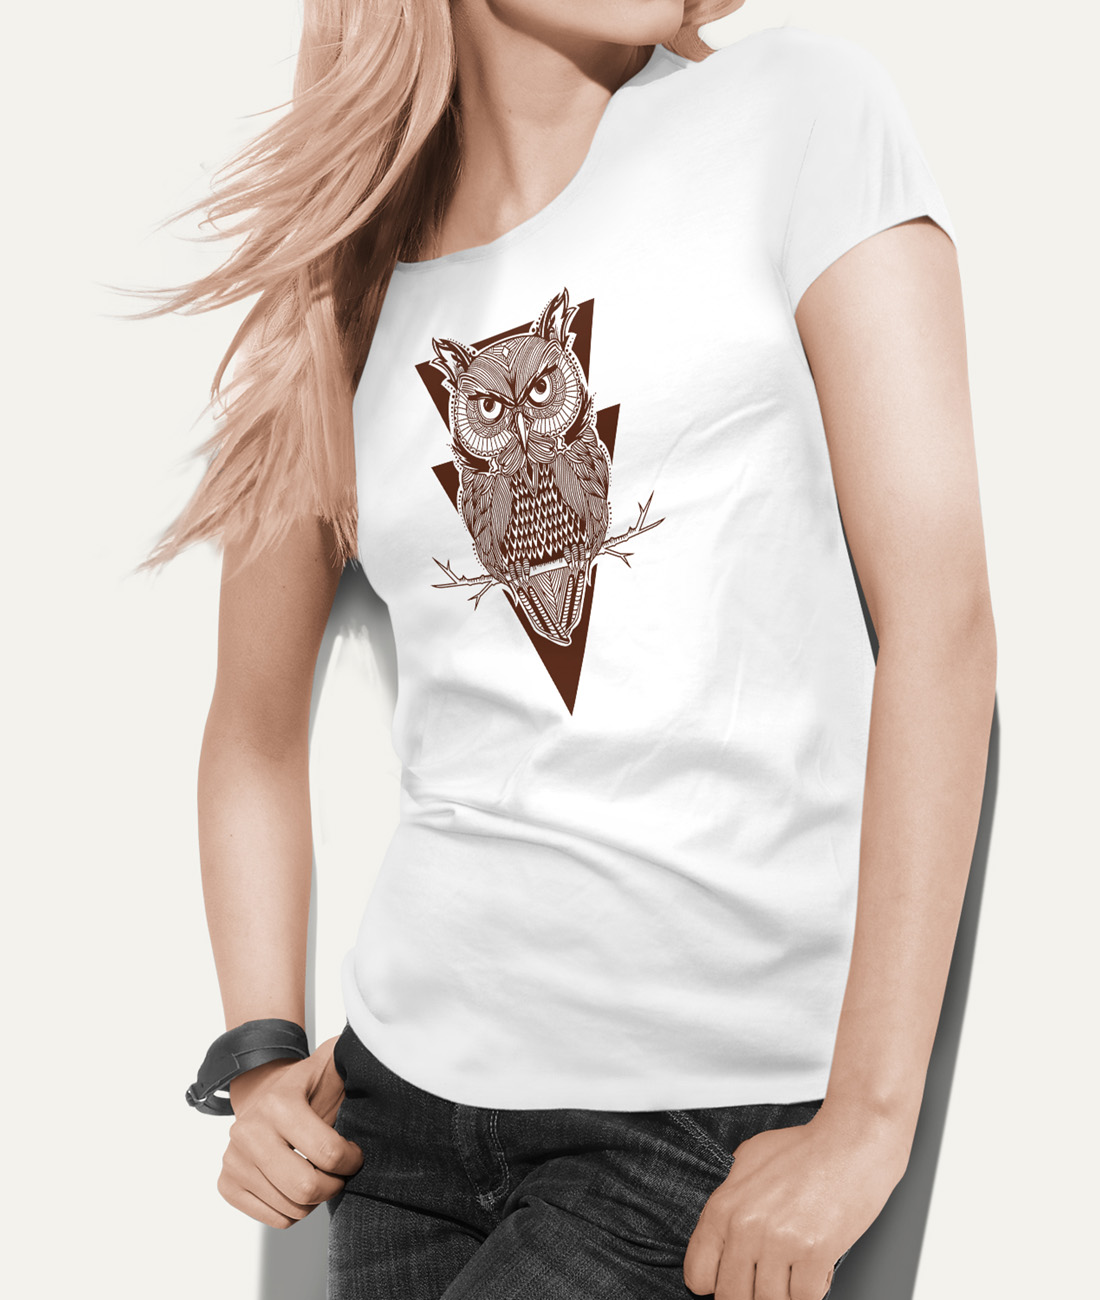 Tshirt owl design T-shirt